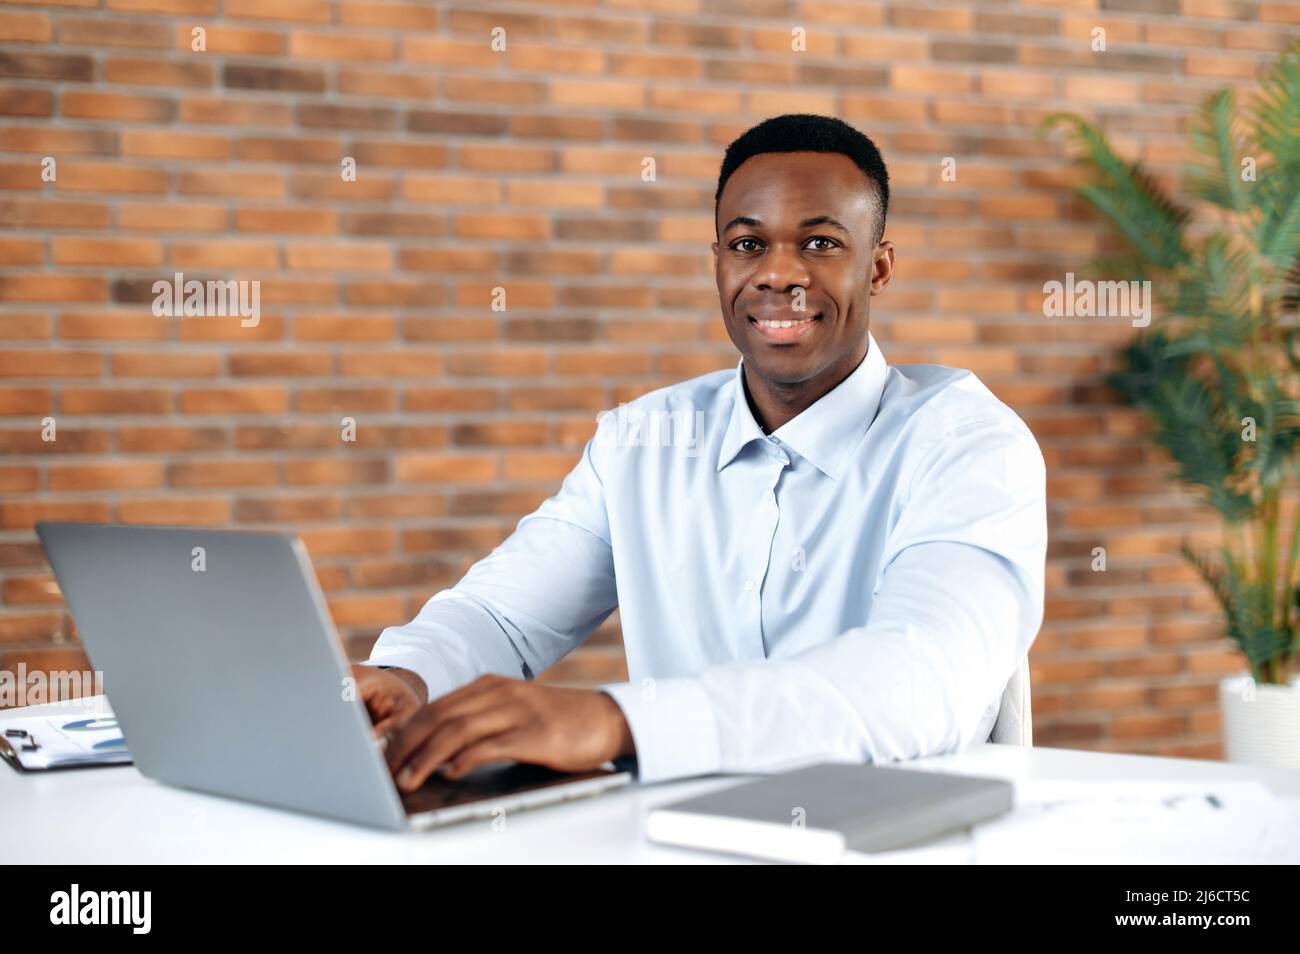 Retrato de un hombre afroamericano con éxito apuesto en camisa formal, hombre de negocios, director ejecutivo de una empresa, corredor, sentado en el lugar de trabajo en una oficina moderna, mirando la cámara, sonriendo amable Foto de stock